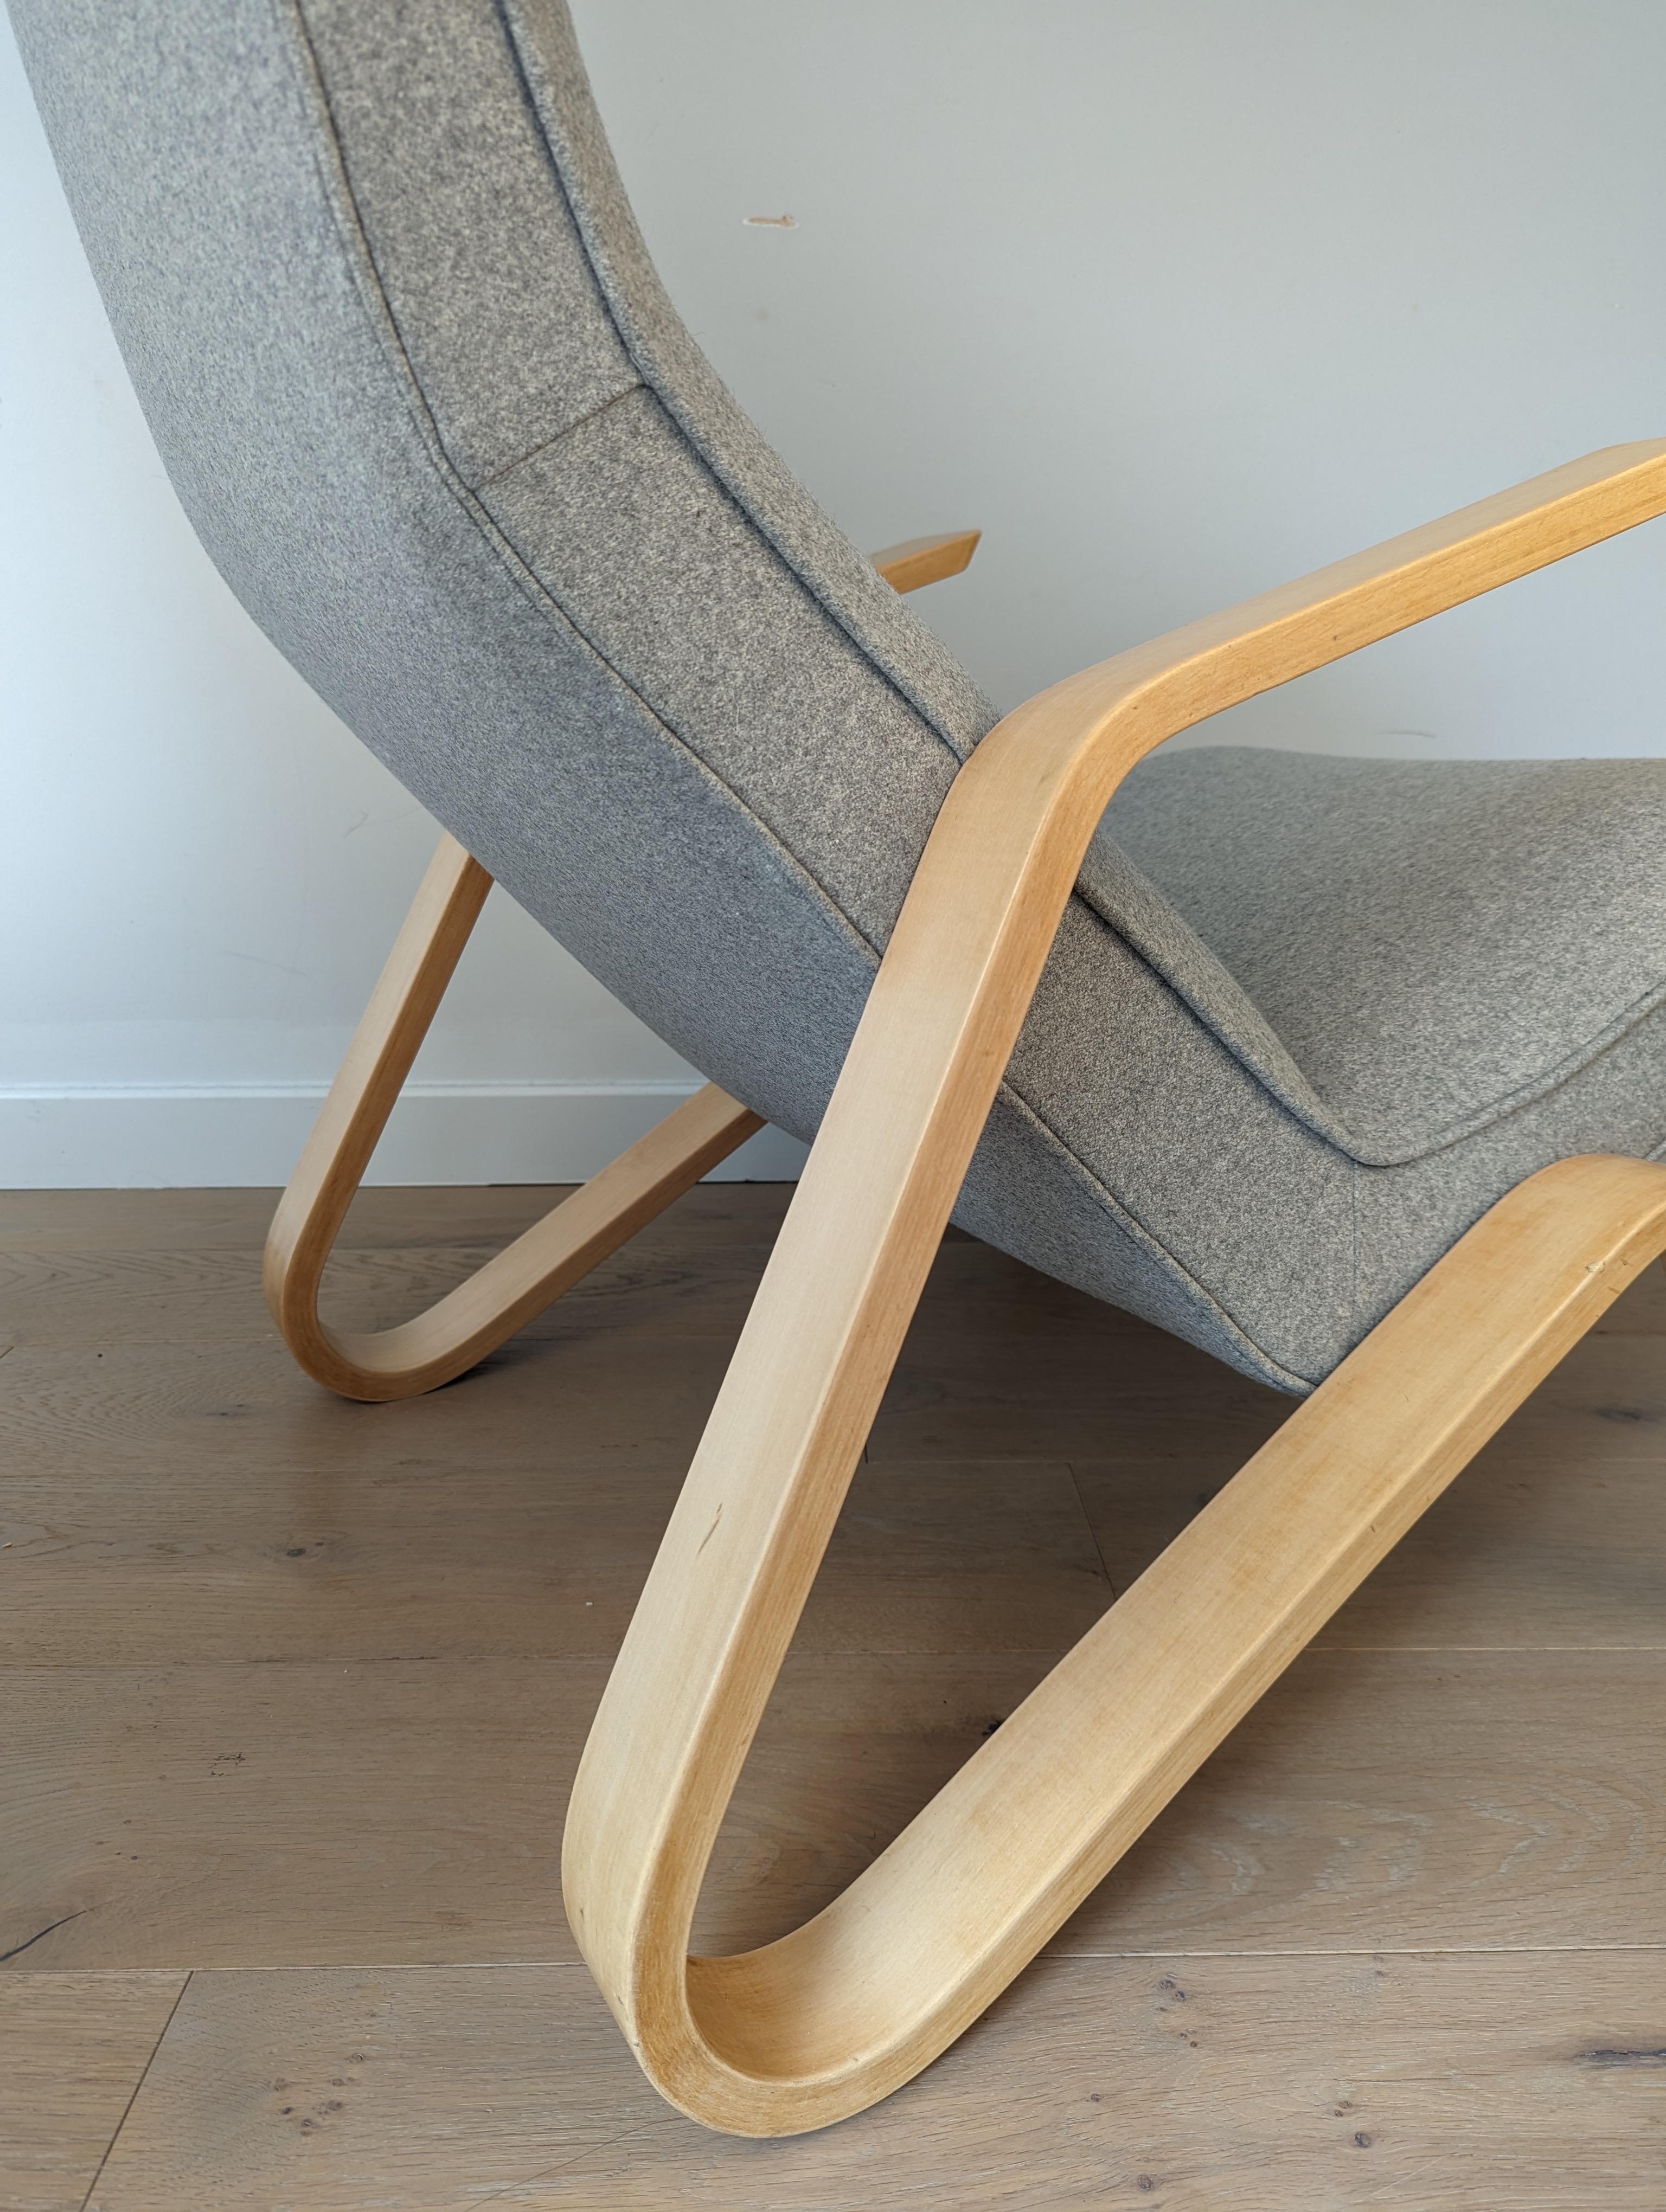 Der Stuhl Grasshopper (oder Modell 61) wurde 1946 von Eero Saarinen für Knoll entworfen. Er war der erste Stuhl, der für die Firma Knoll entworfen wurde, und ist heute eine Design-Ikone, die in Museen auf der ganzen Welt ausgestellt wird. 

Die